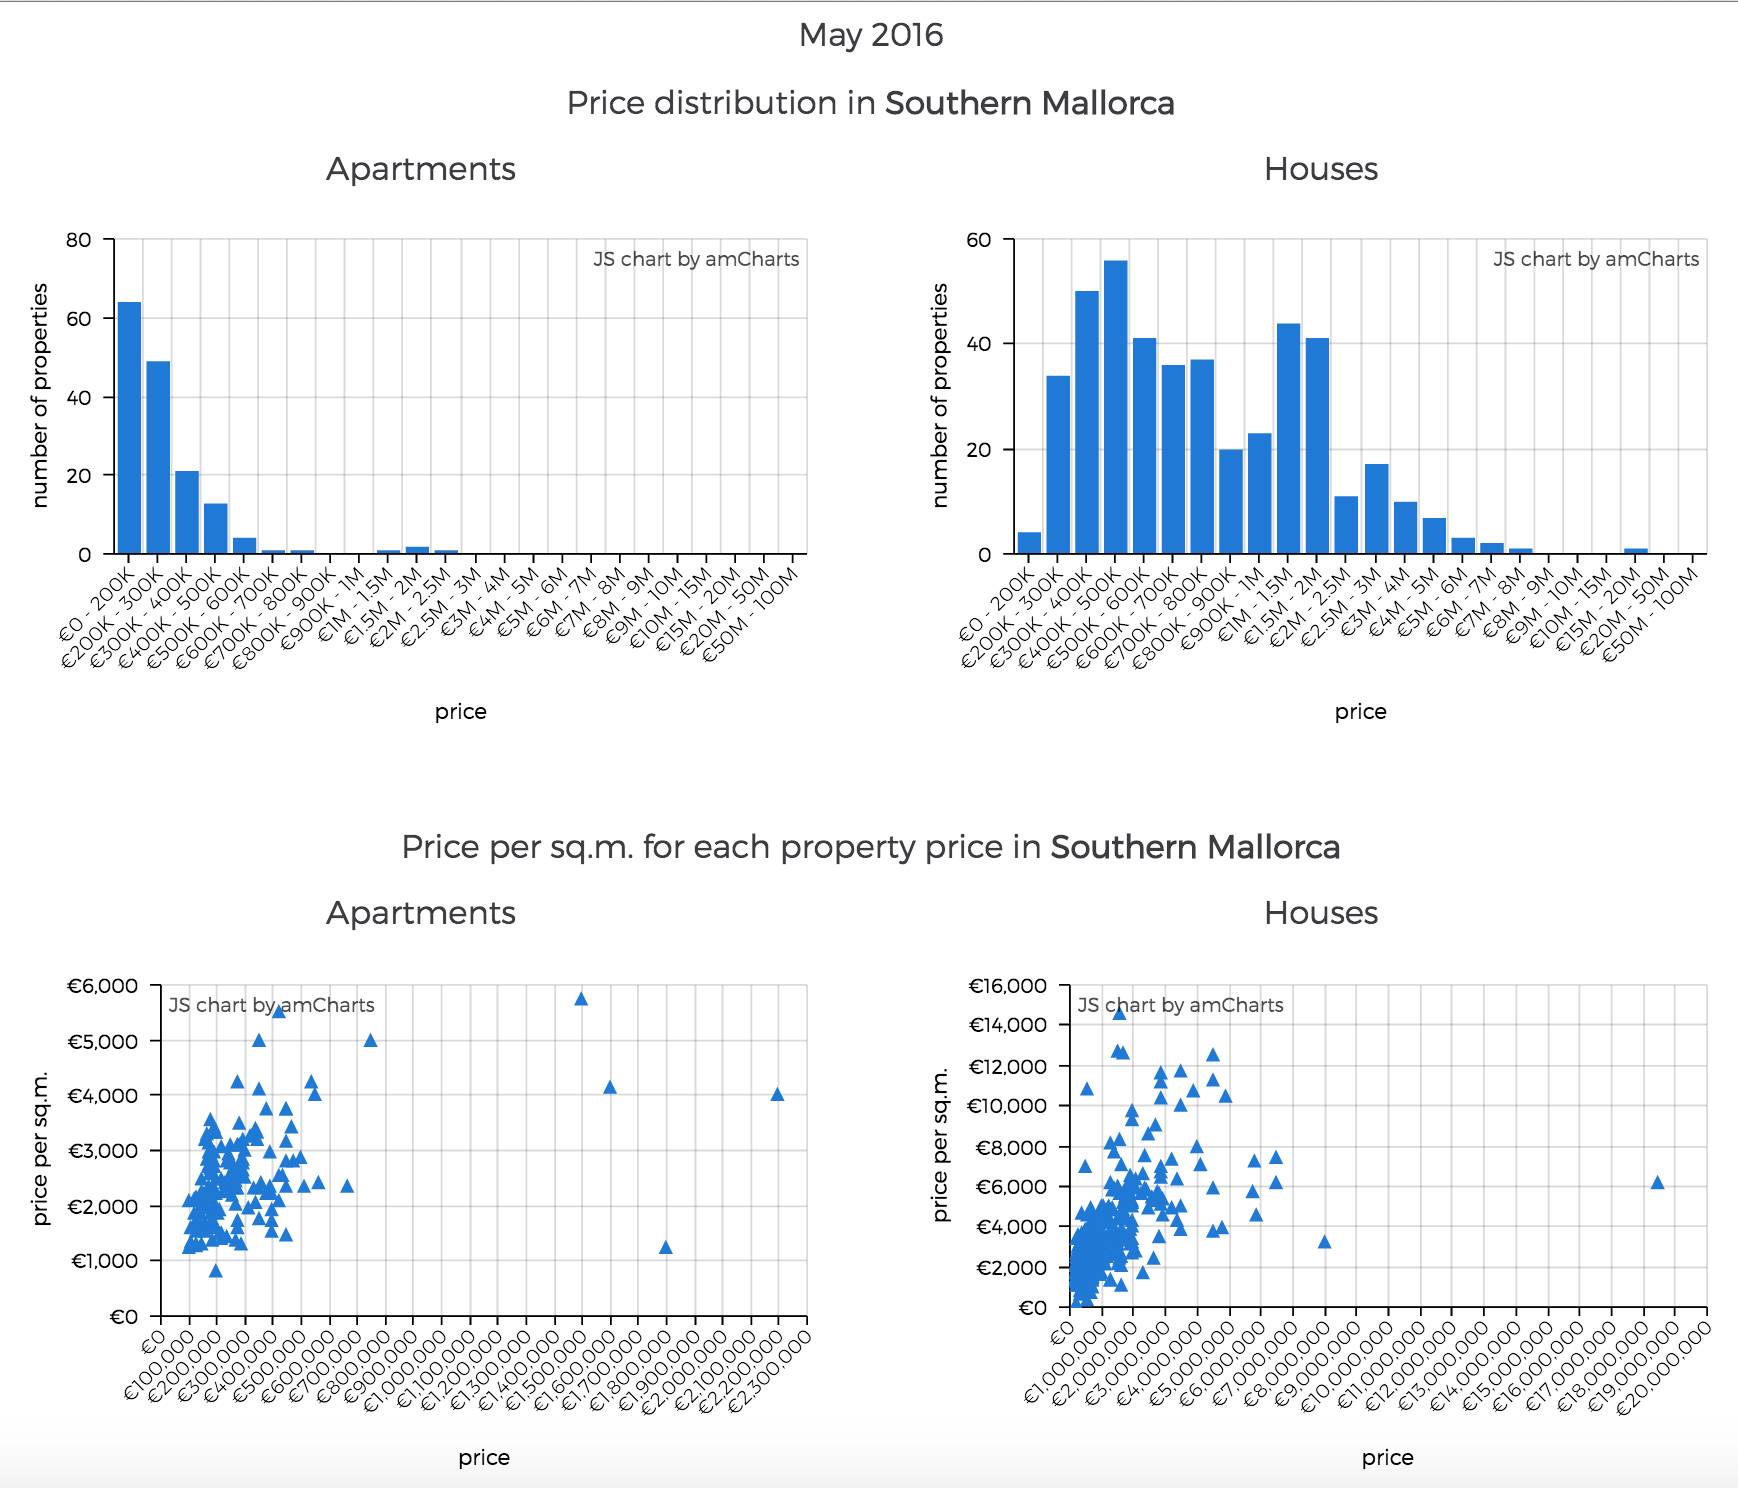 Gráfico de columnas exibiendo el la distribución del precio y el precio por metro cuadrado de inmuebles en Mallorca